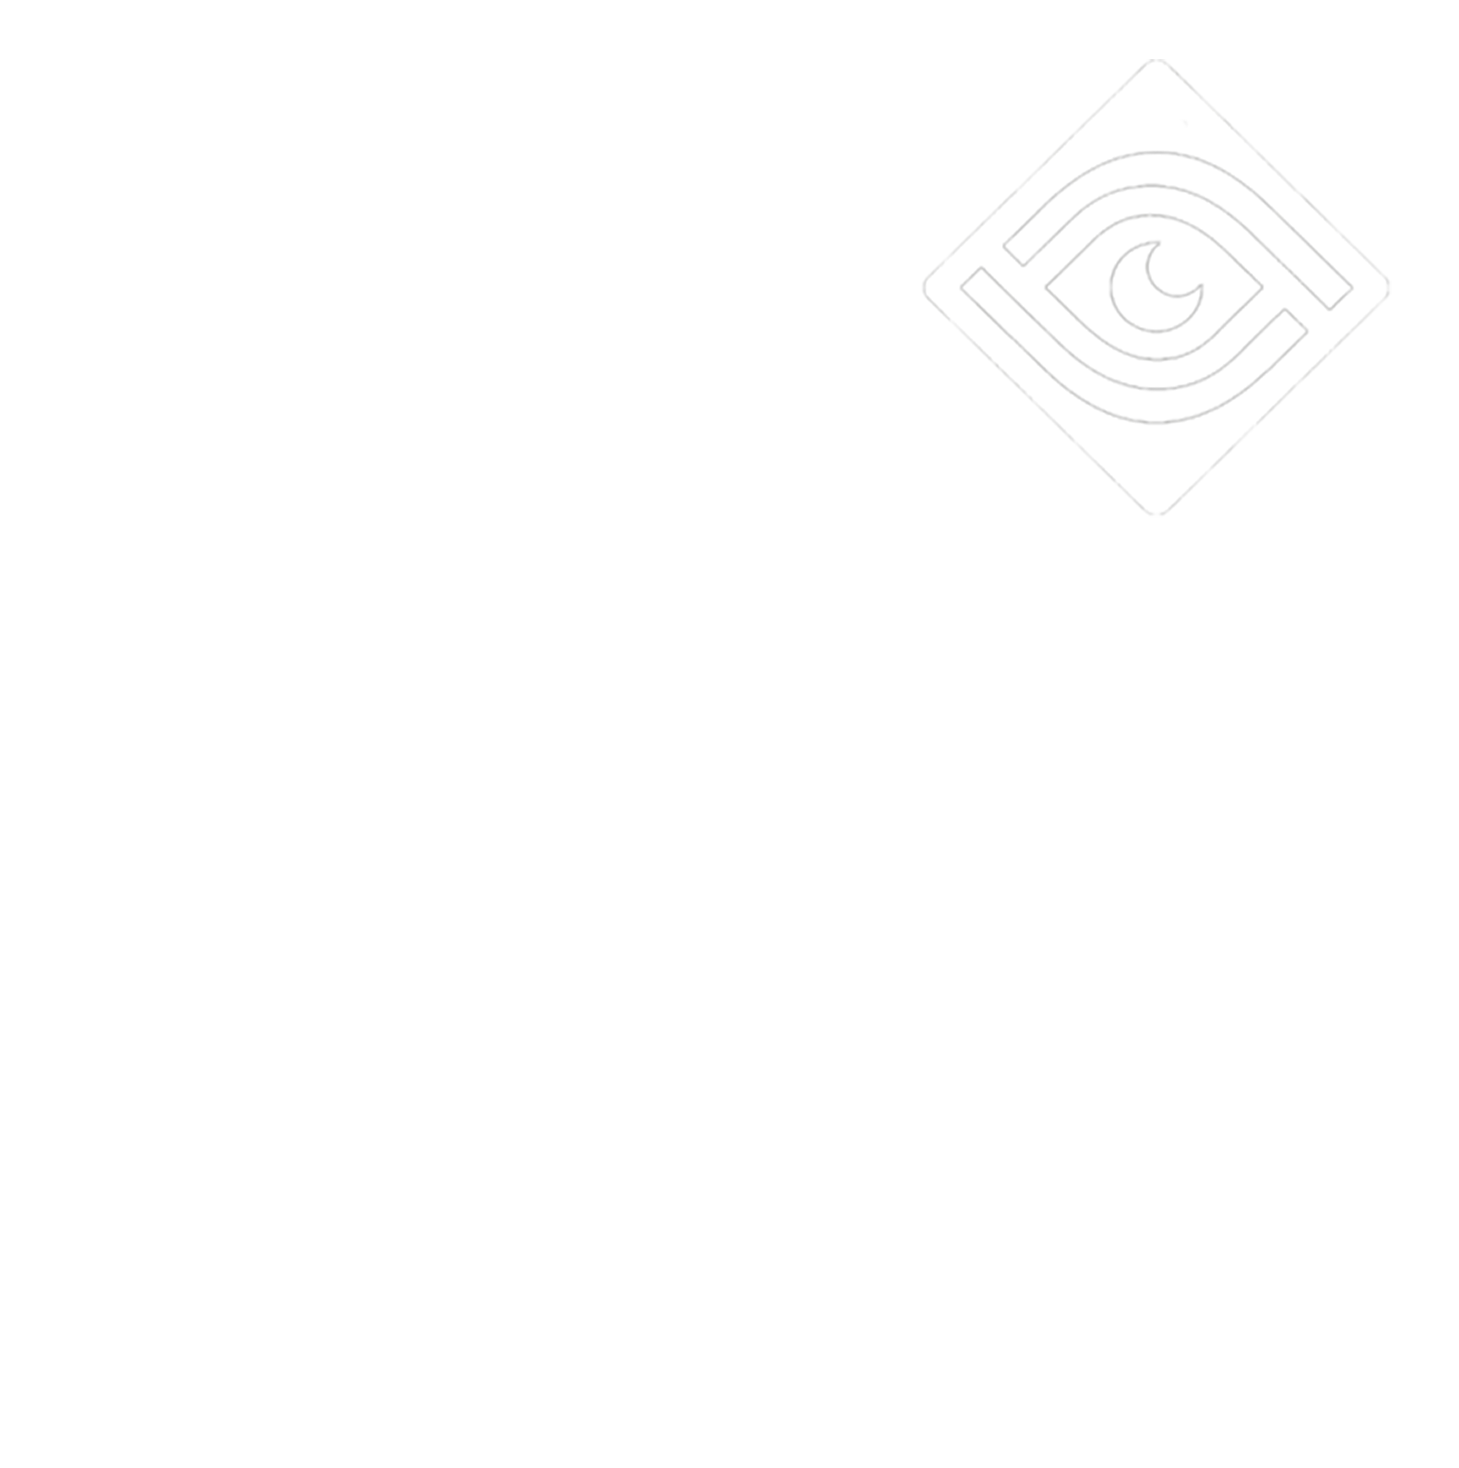 Visual Narrative Films